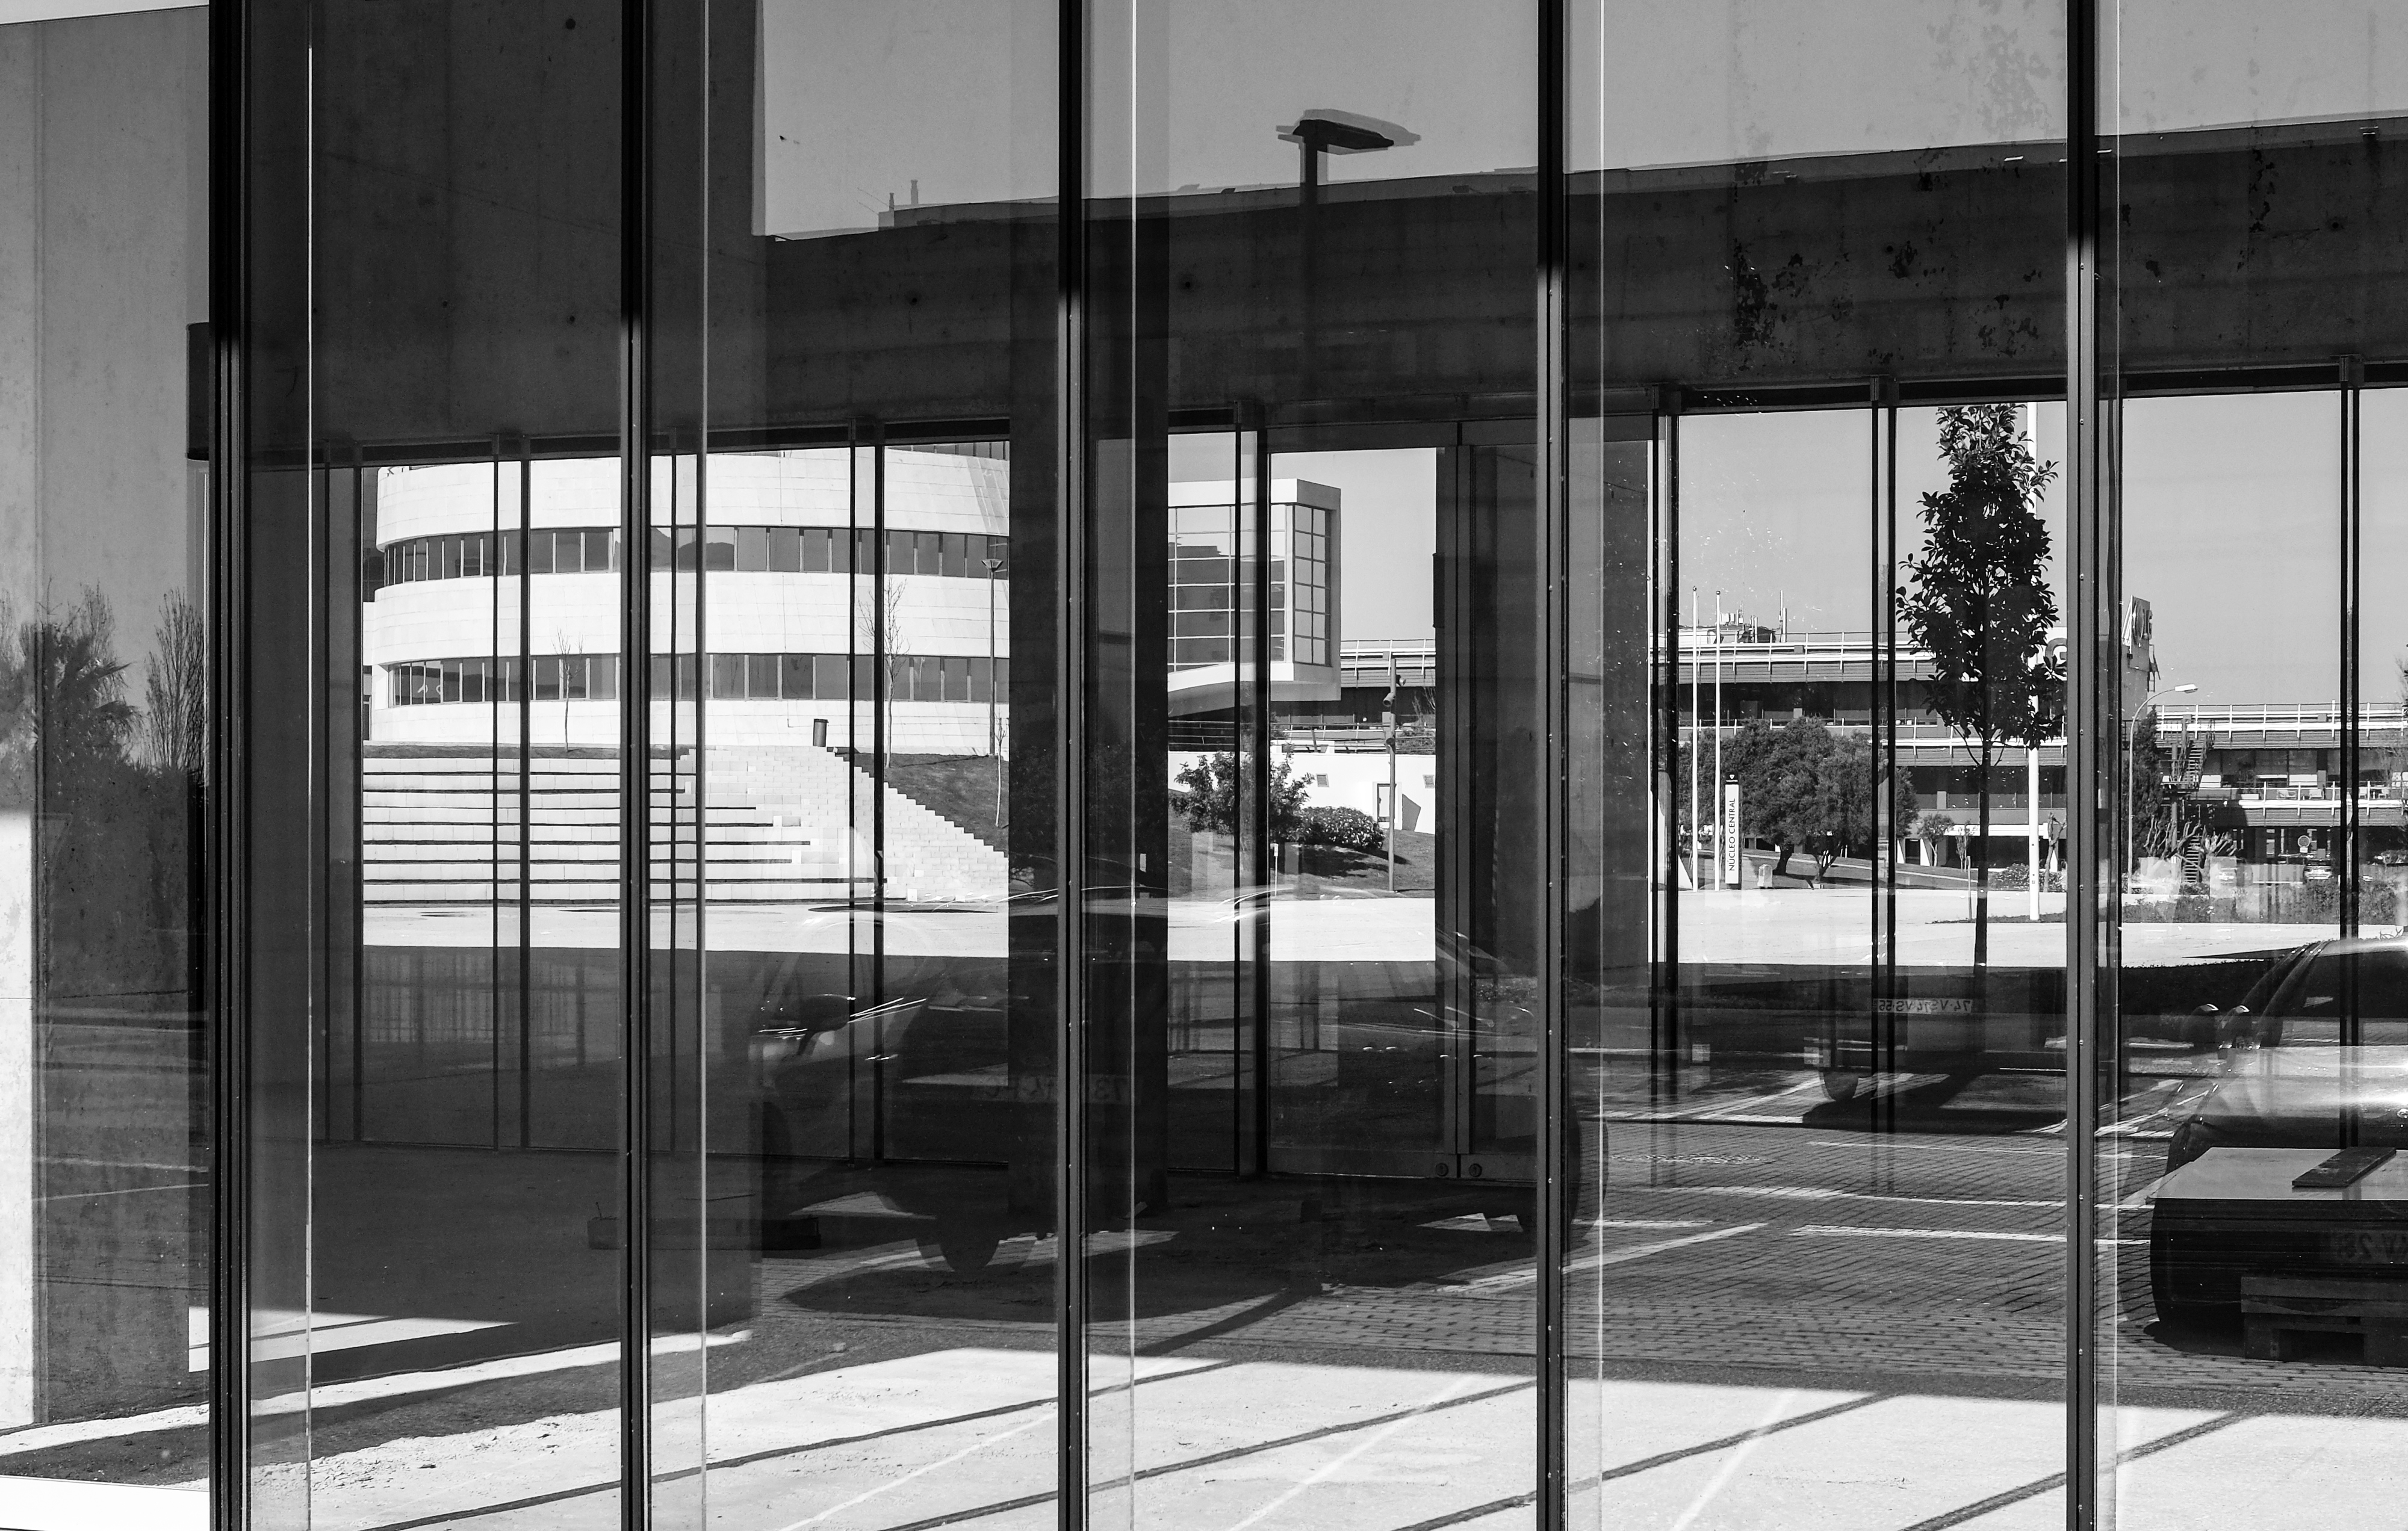 Glasfassade eines Bürogebäudes